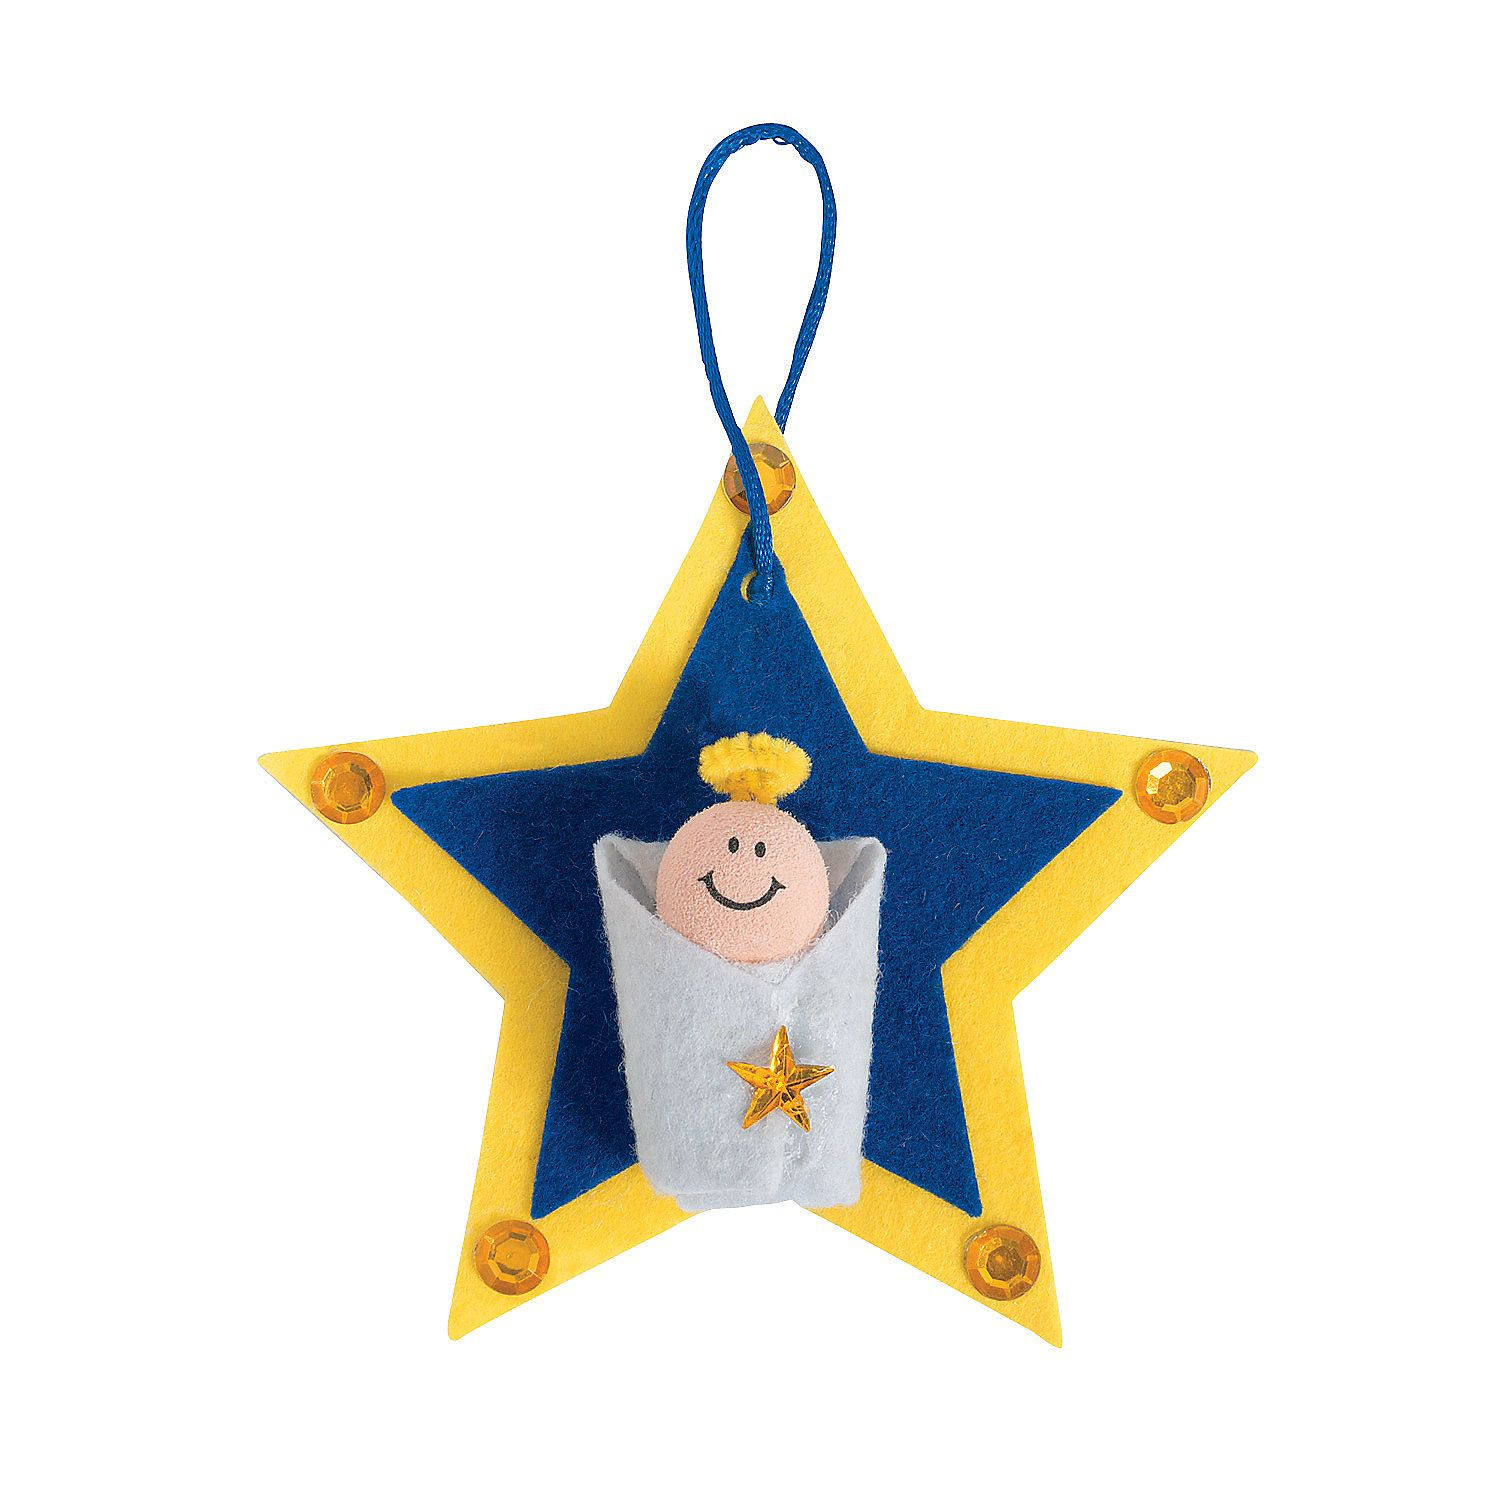 Baby Jesus Craft For Preschoolers
 Baby Jesus Star Ornament Craft Kit OrientalTrading